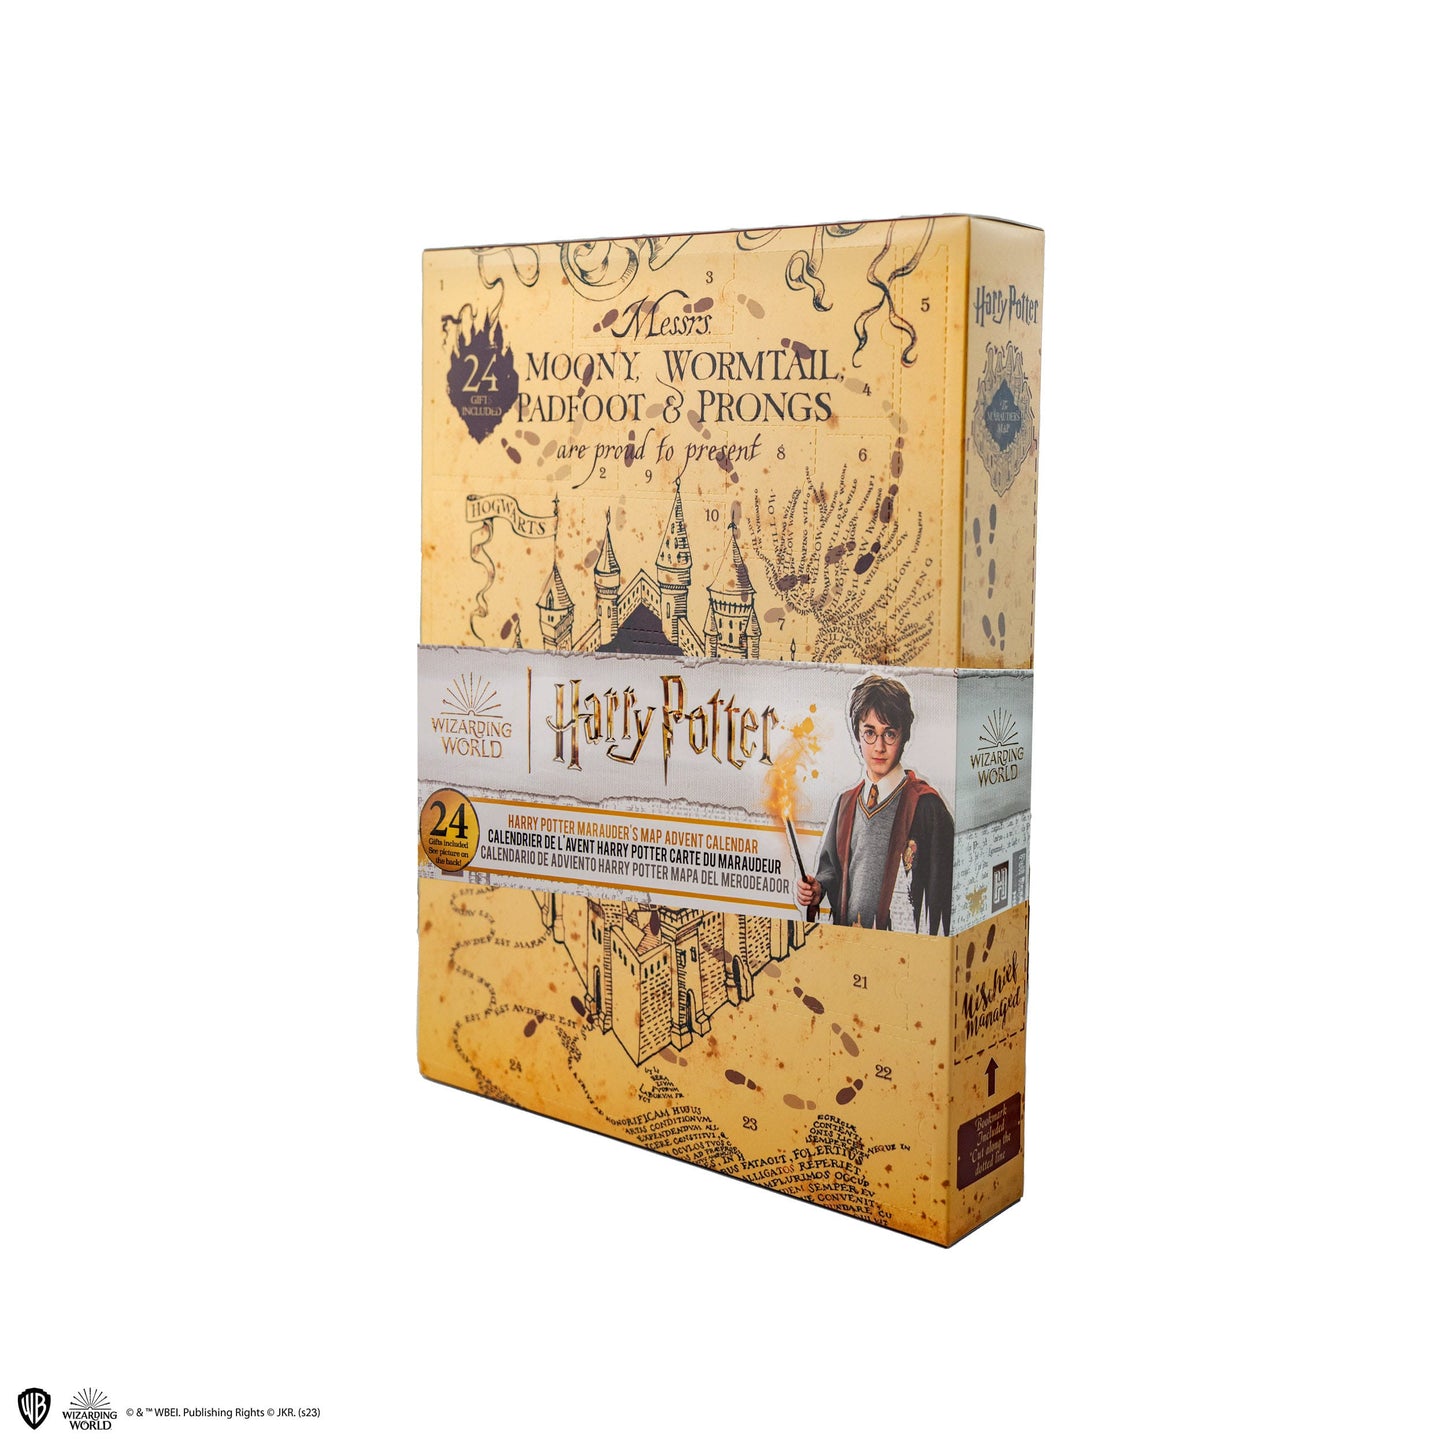 Calendário do Advento Harry Potter - Cartão do Maroto